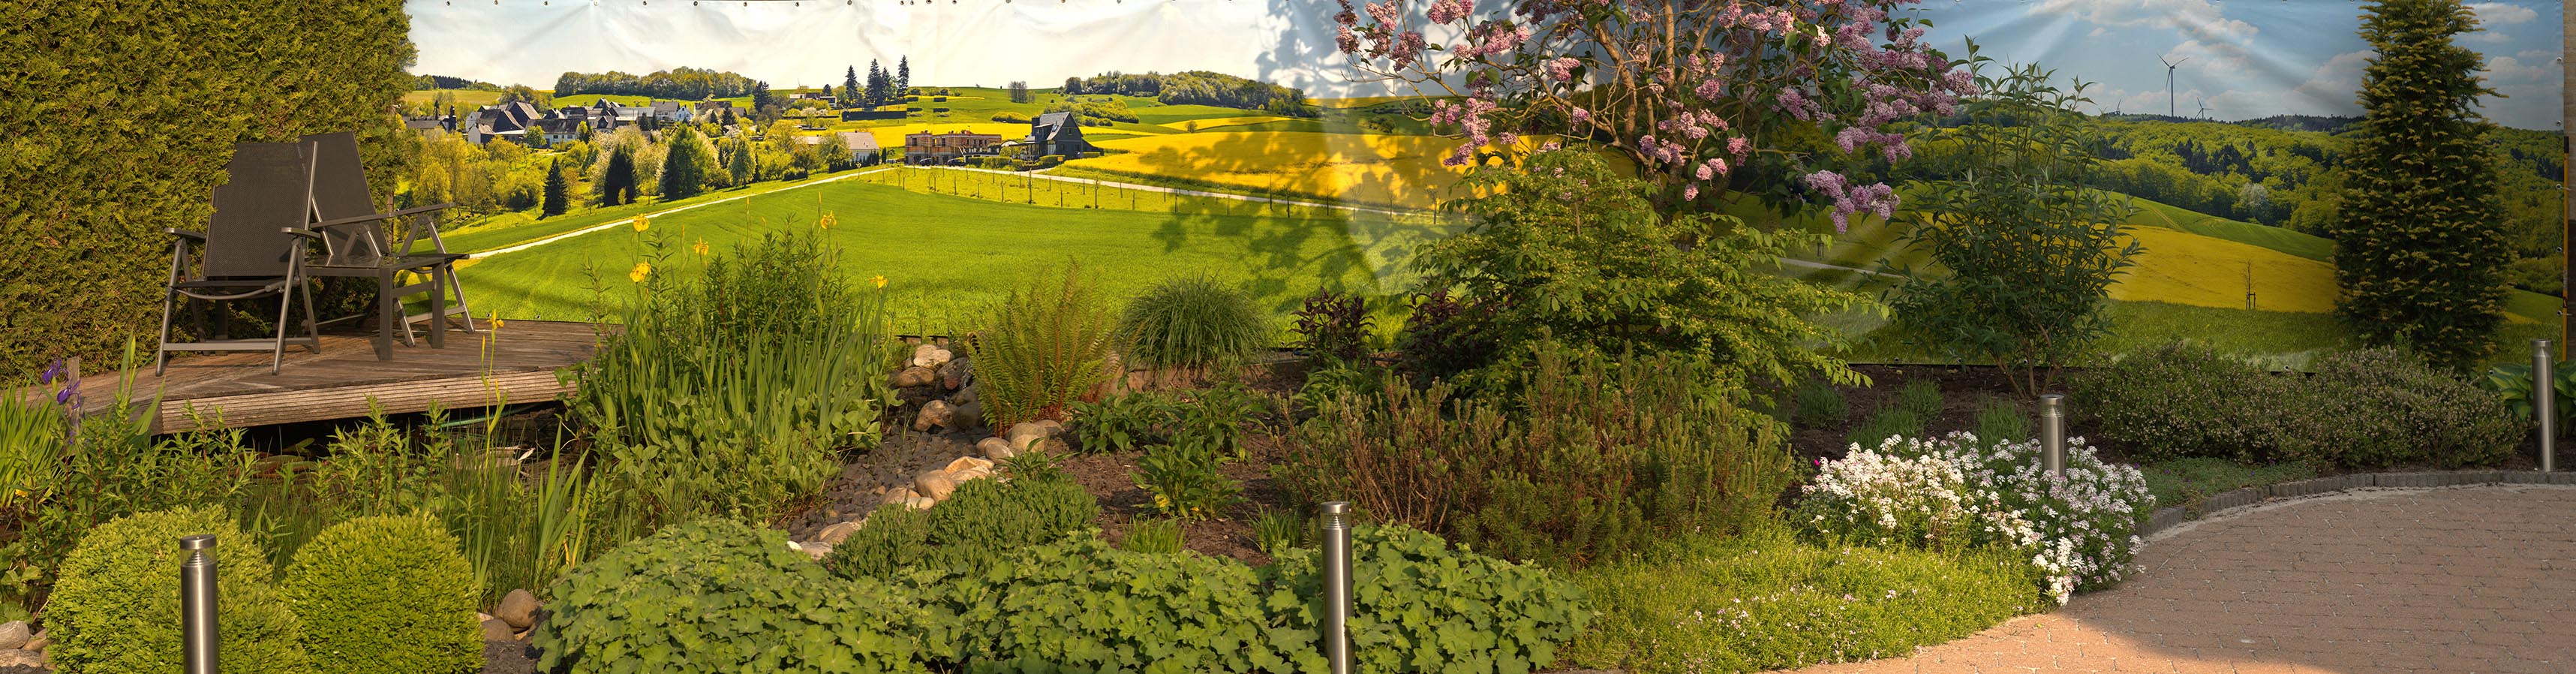 tuin met banner koolzaadvelden in Duitsland